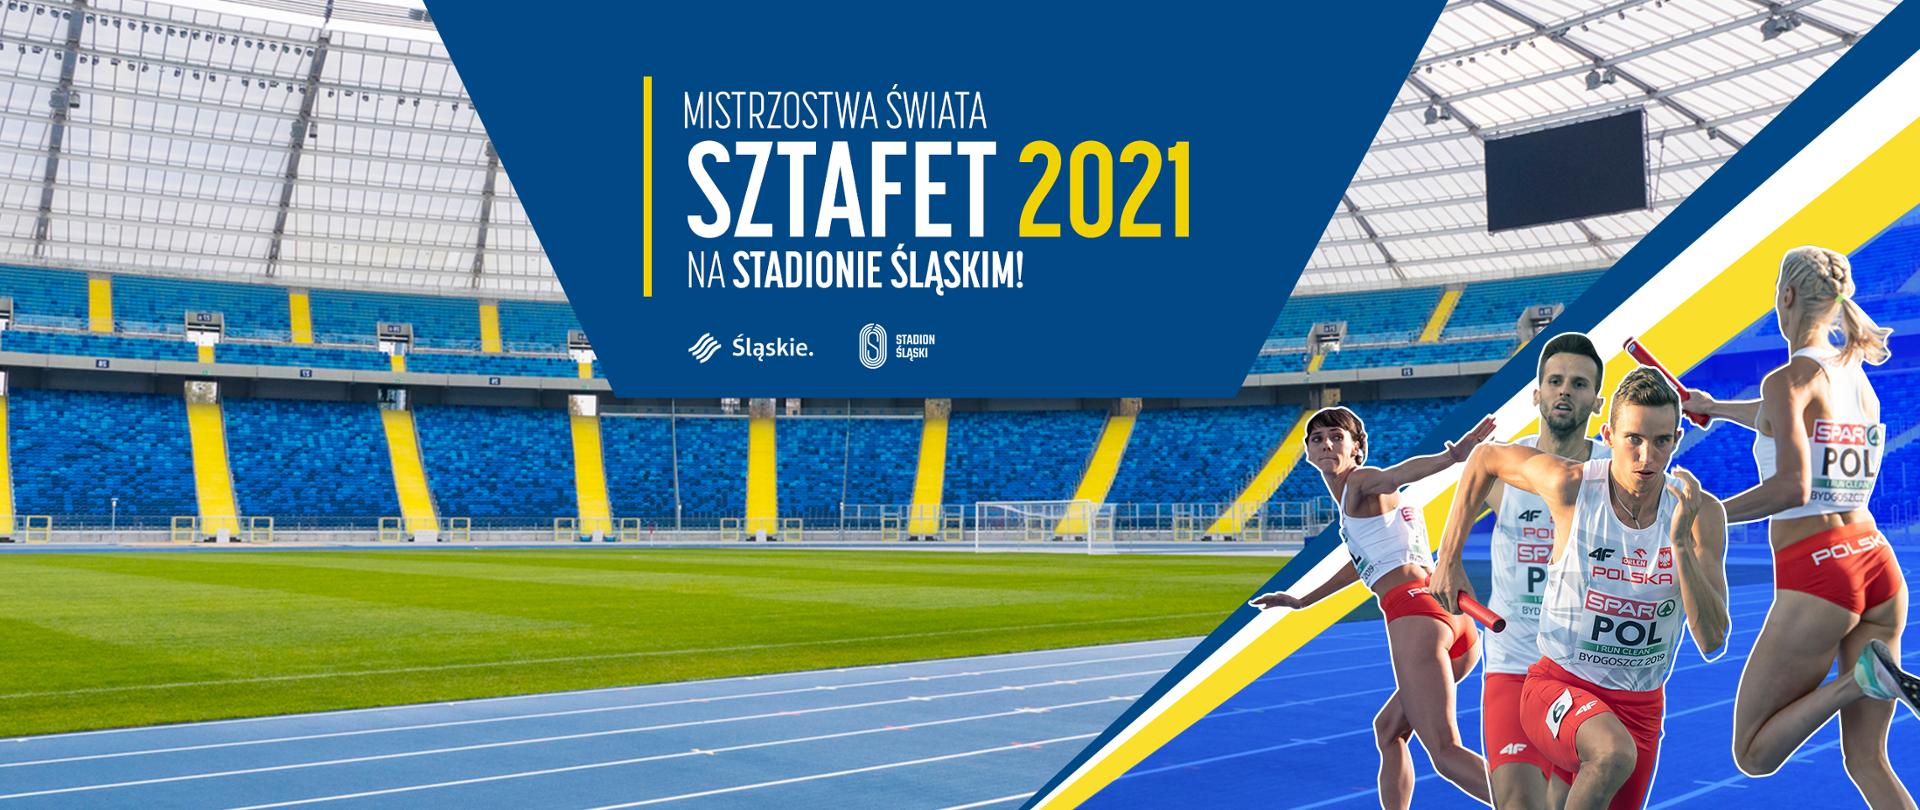 Lekkoatletyczne Mistrzostwa Świata Sztafet 2021 na Stadionie Śląskim